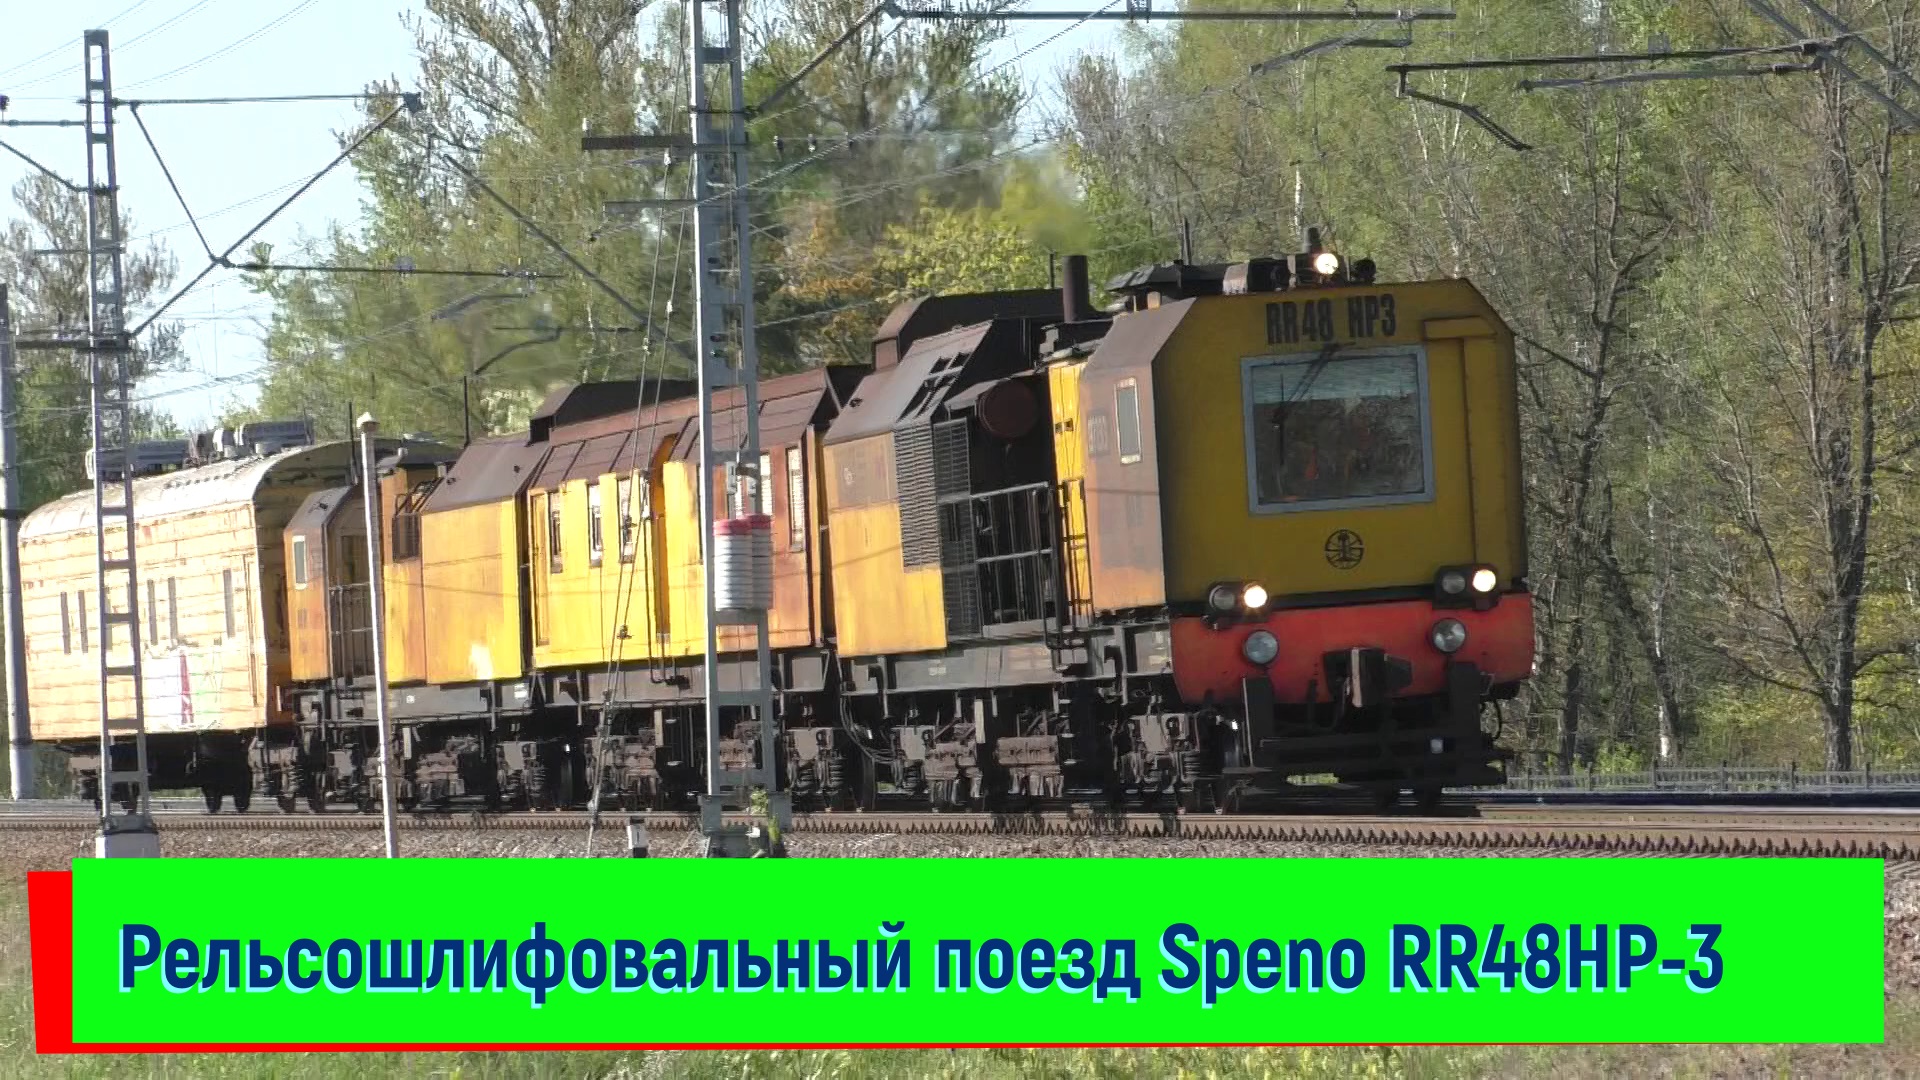 Рельсошлифовальный поезд Speno RR48HP-3 на станции Колпино | Speno RR48HP-3, Kolpino station